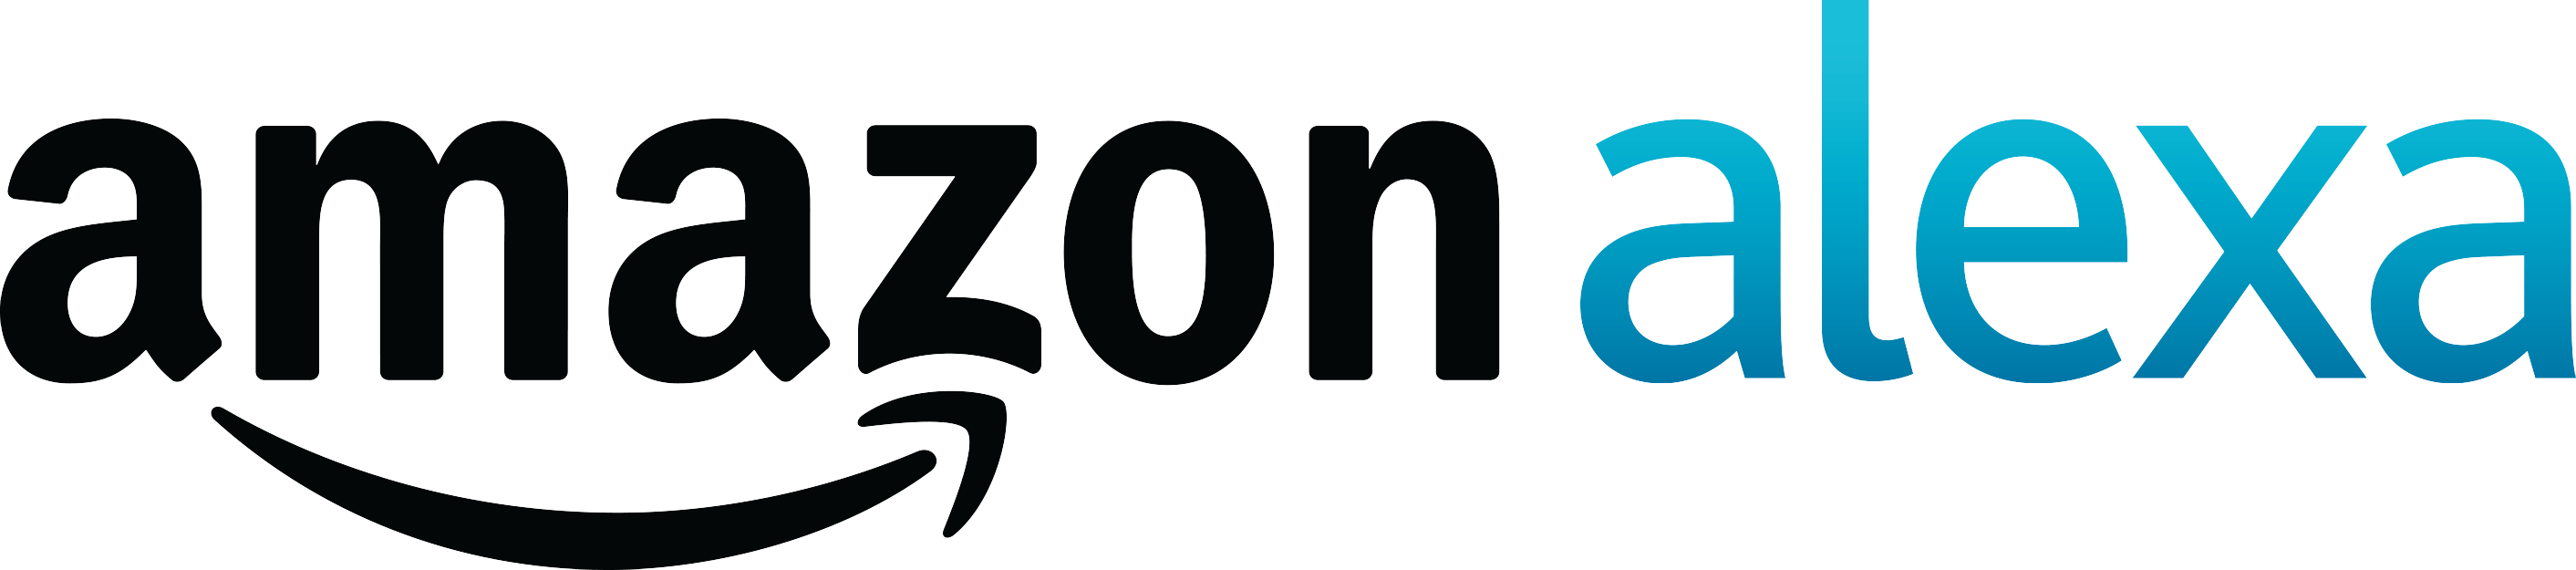 Amazon Alexa Logo - Amazon Alexa logo - Banff Venture Forum